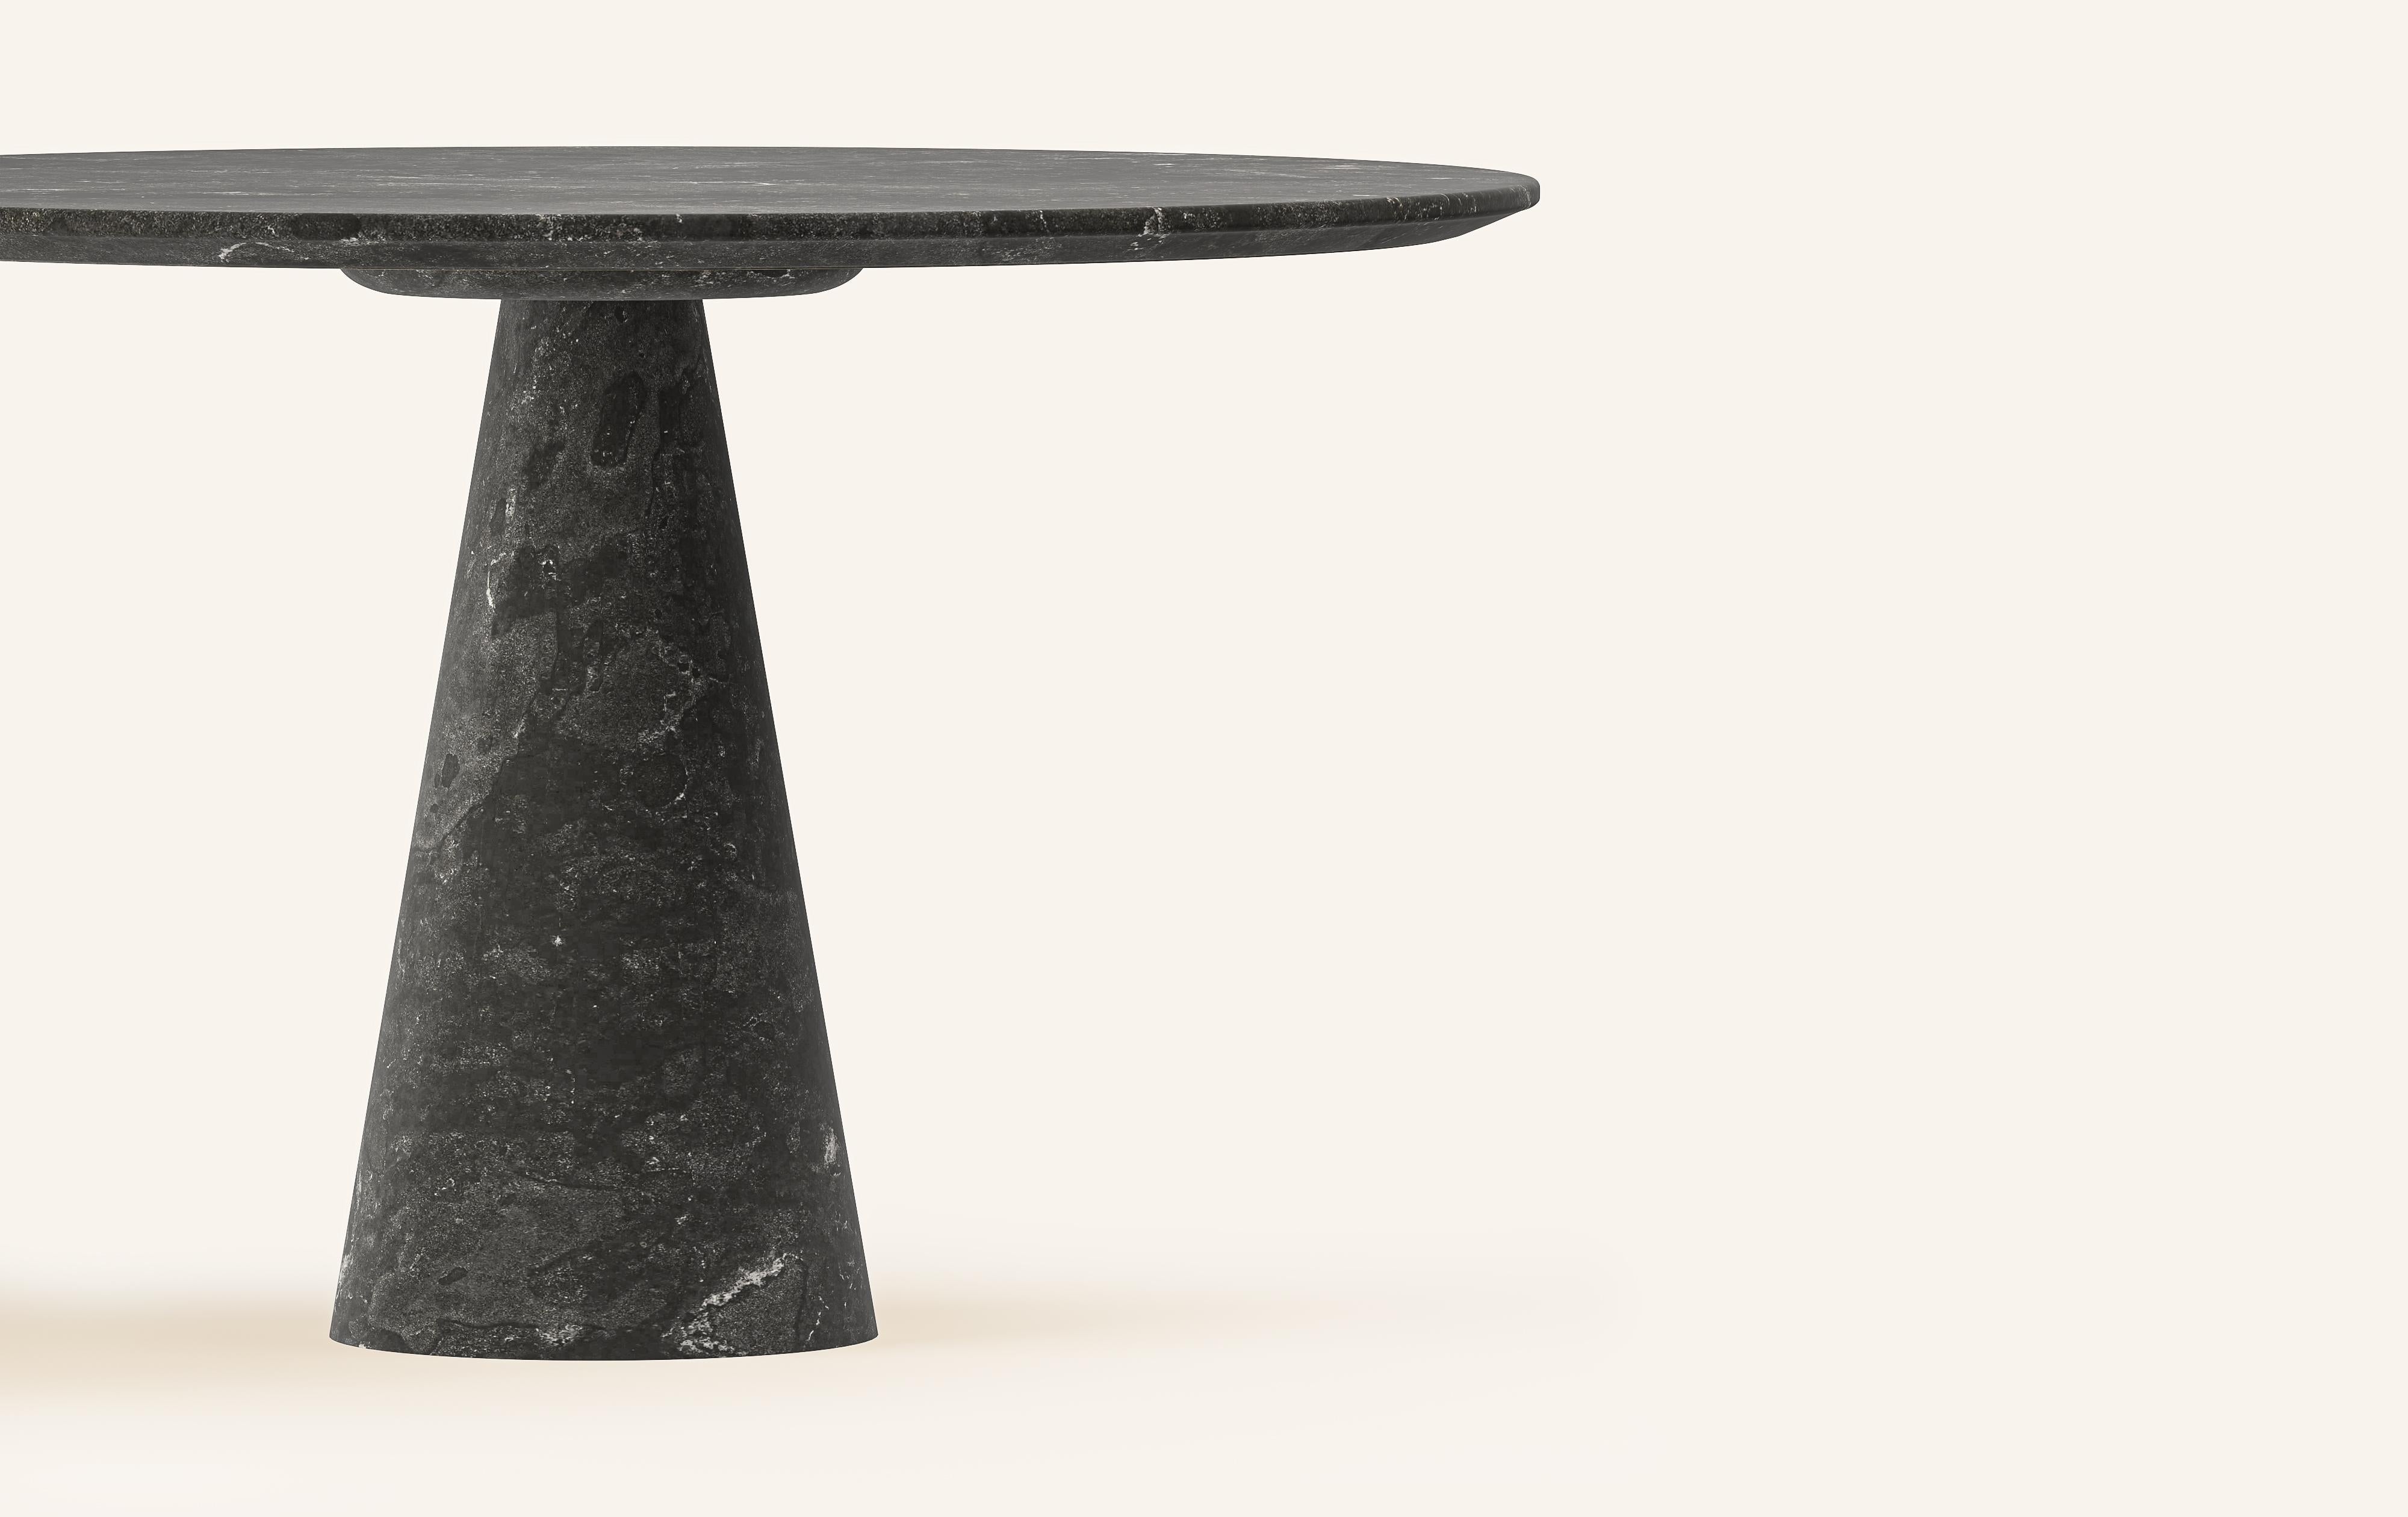 Organic Modern FORM(LA) Cono Round Dining Table 42”L x 42”W x 30”H Nero Petite Granite For Sale